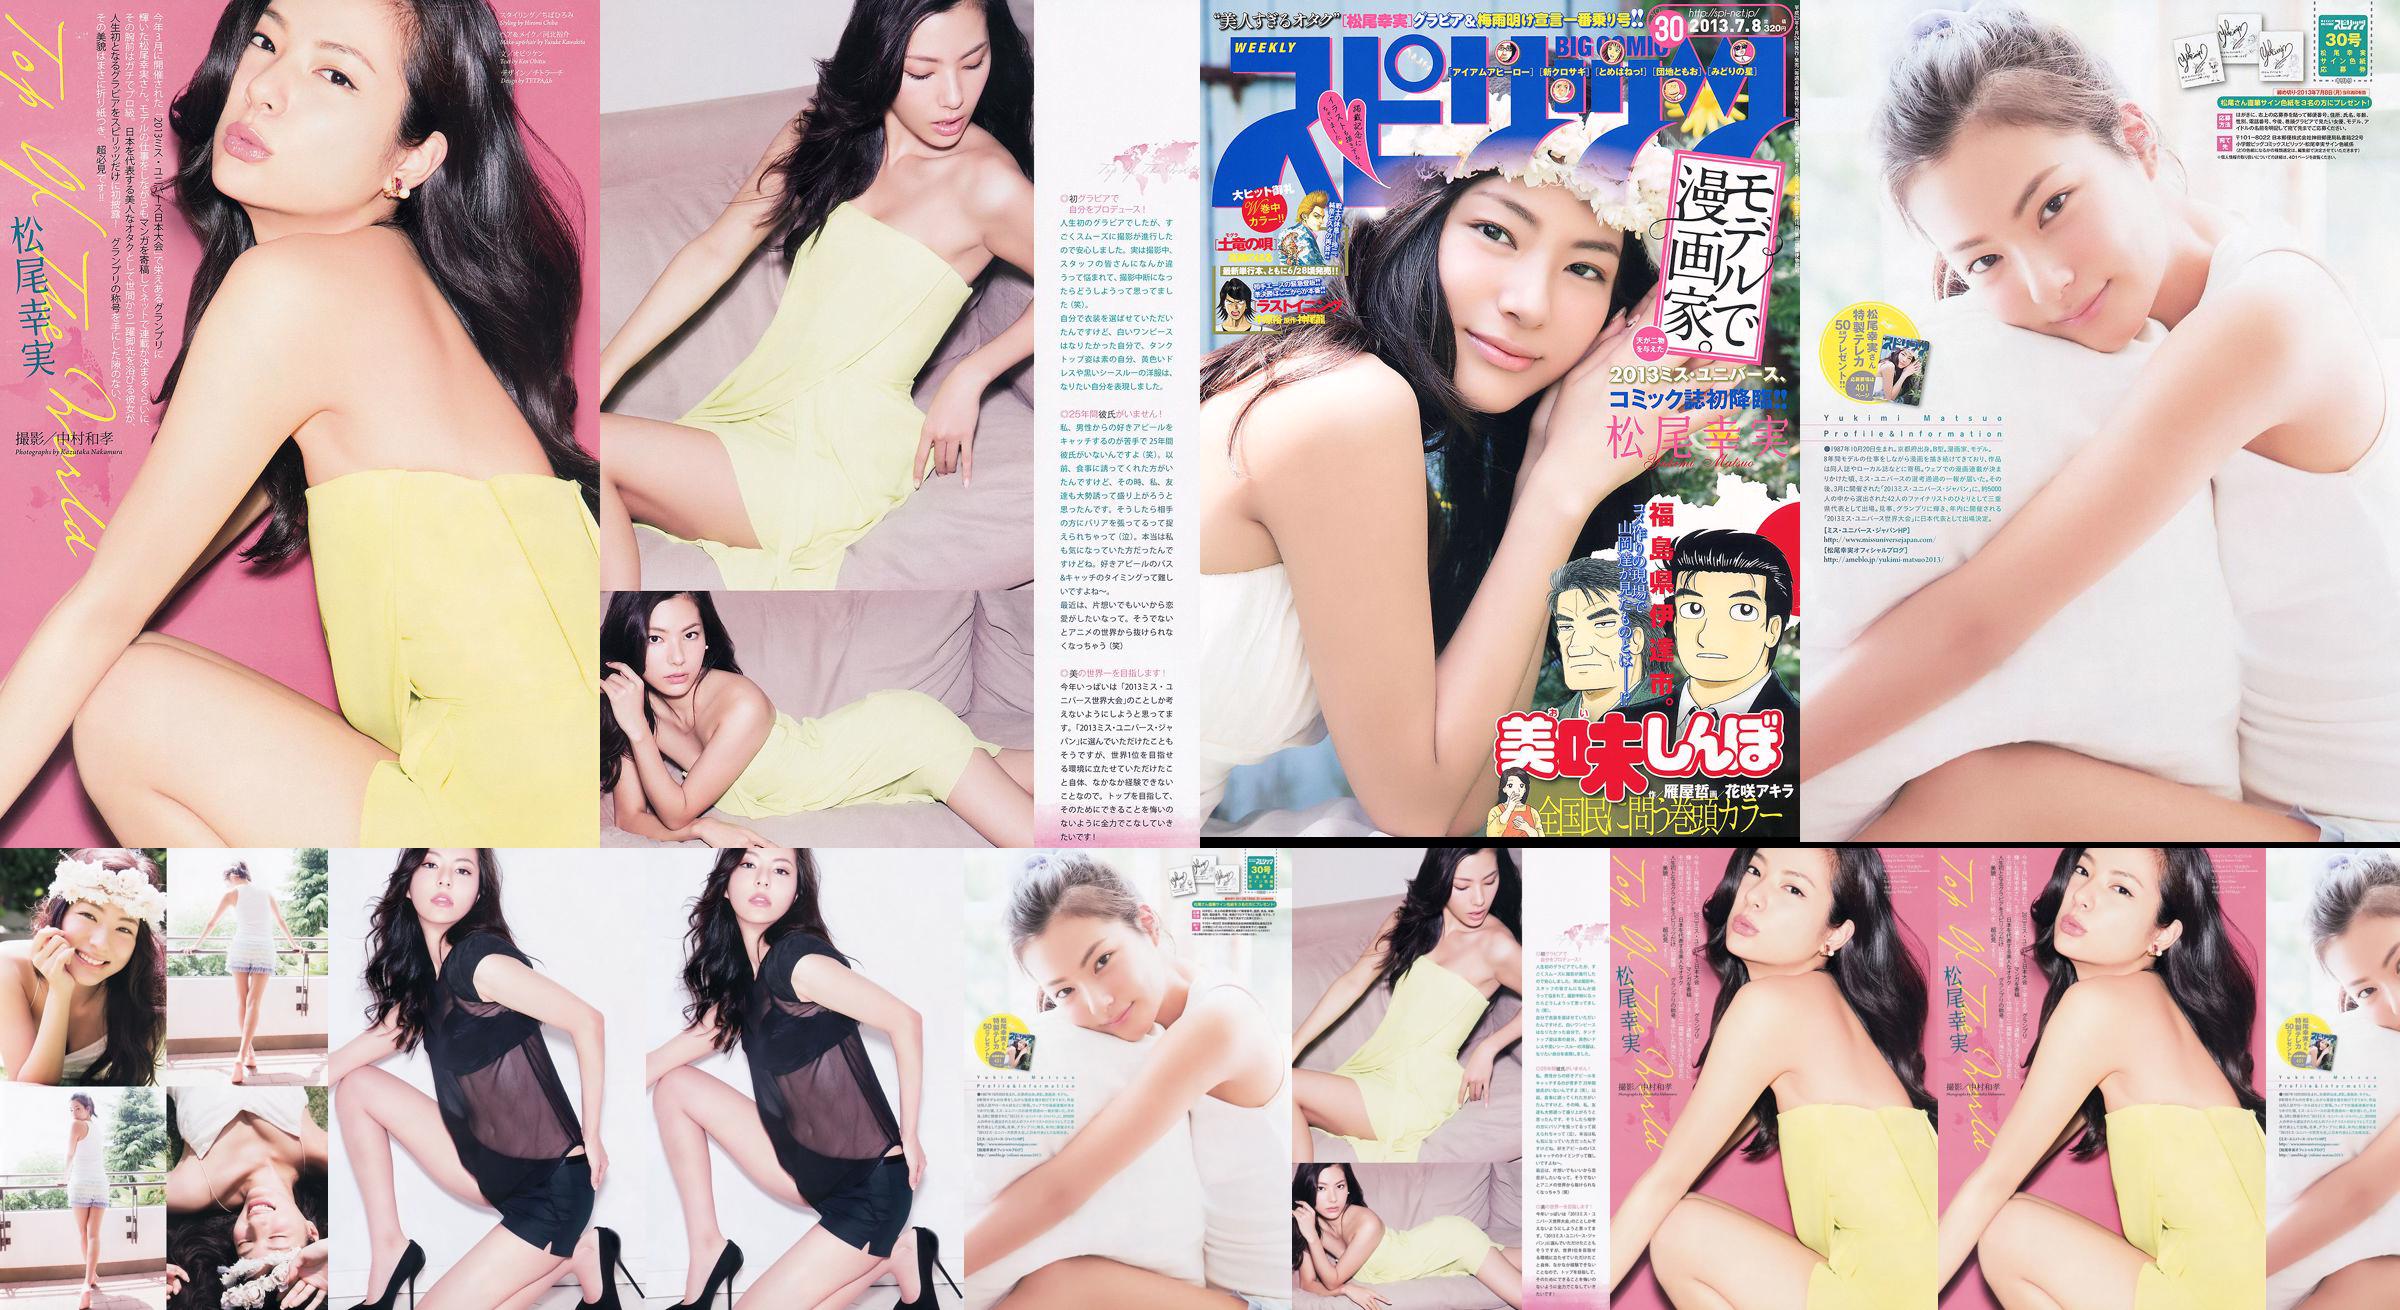 [Weekly Big Comic Spirits] Komi Matsuo 2013 No.30 Photo Magazine No.180ea9 Pagina 3